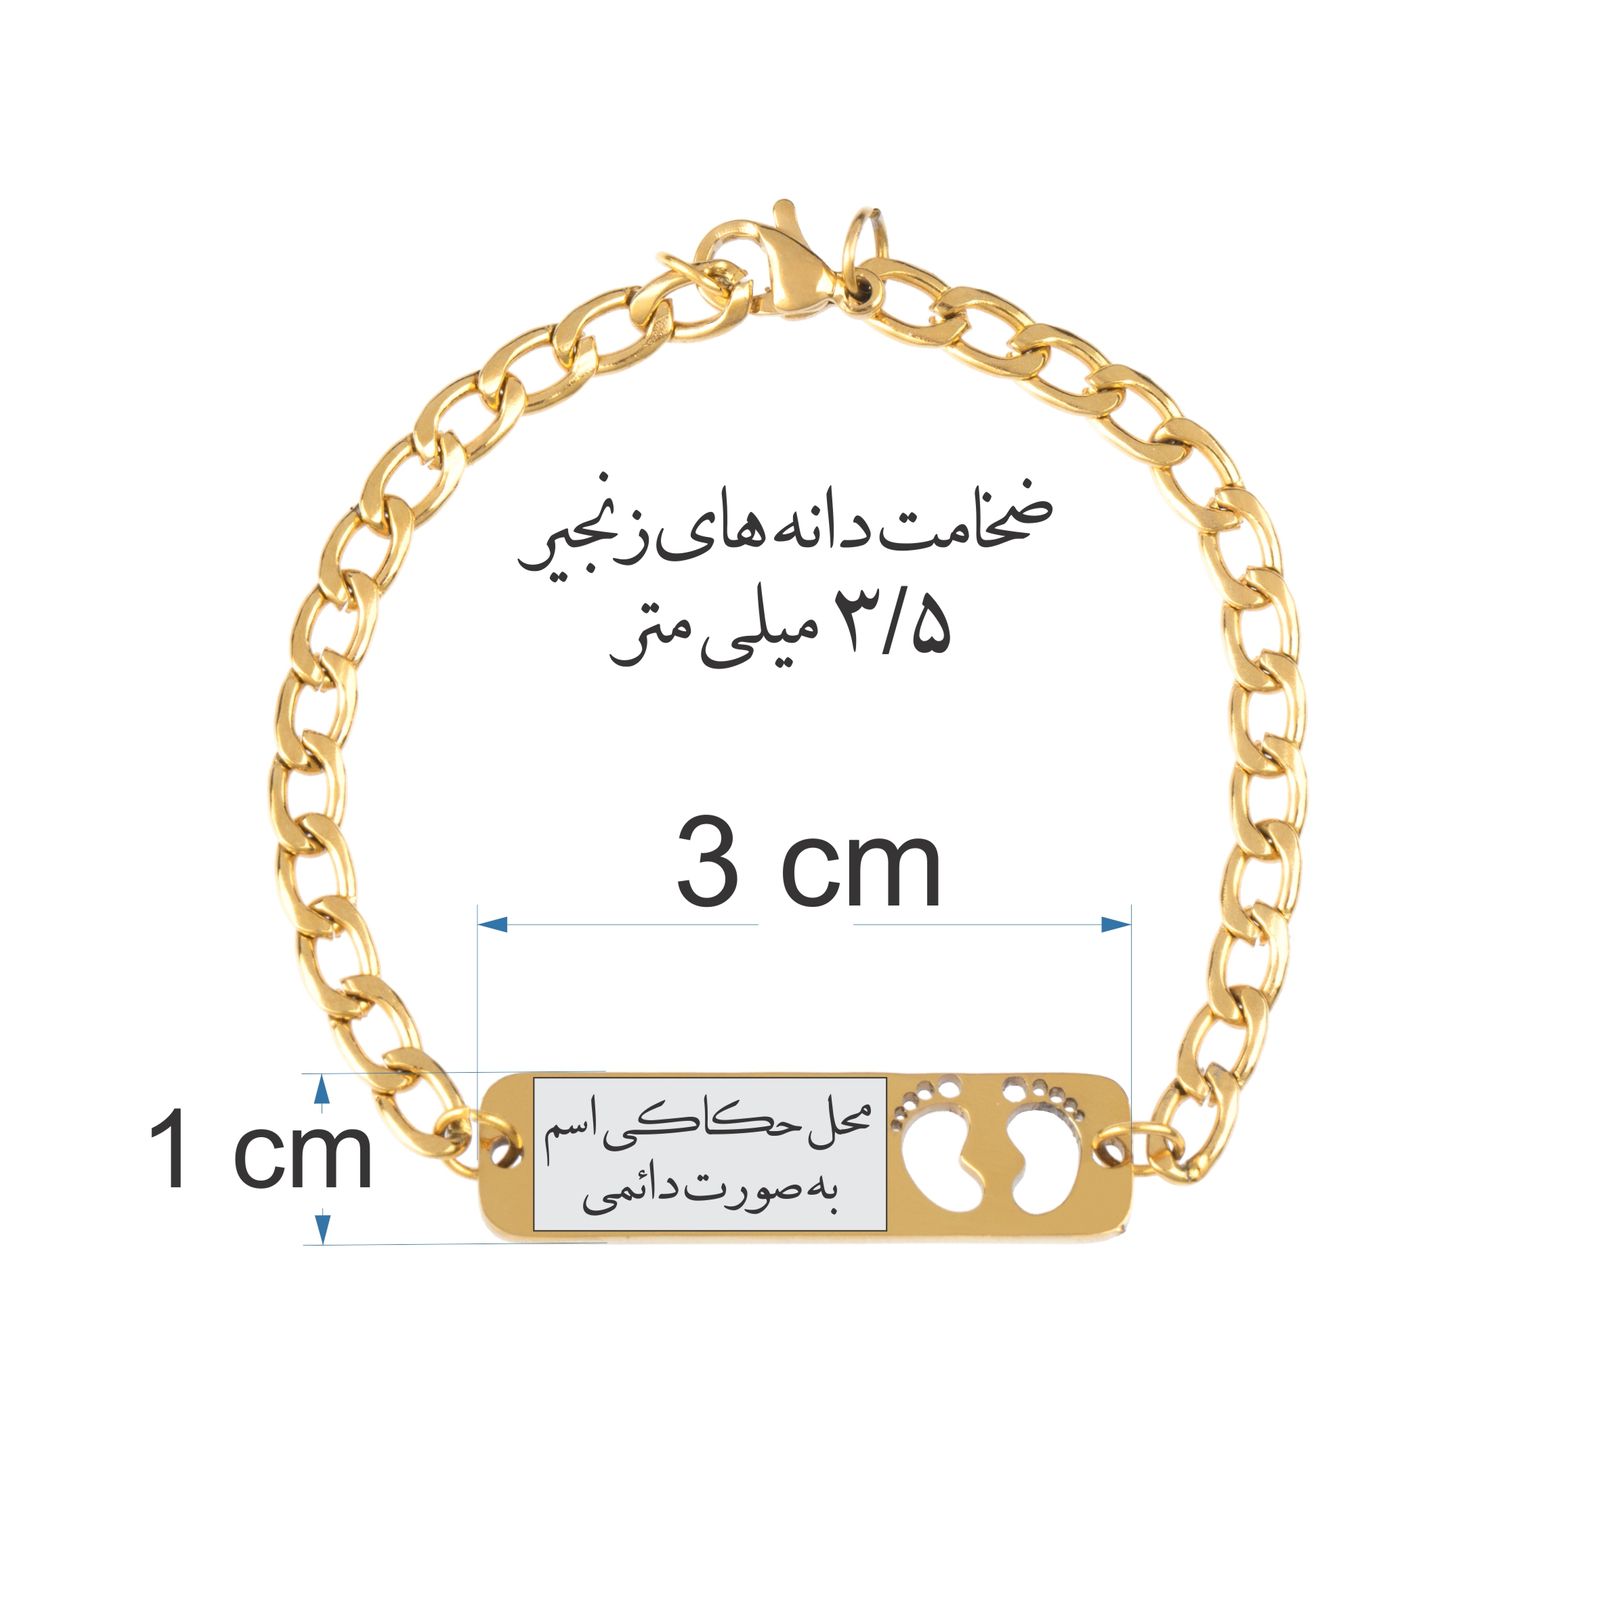 دستبند دخترانه گيلواره زراوشان مدل اسم سارینا کد B133 -  - 3